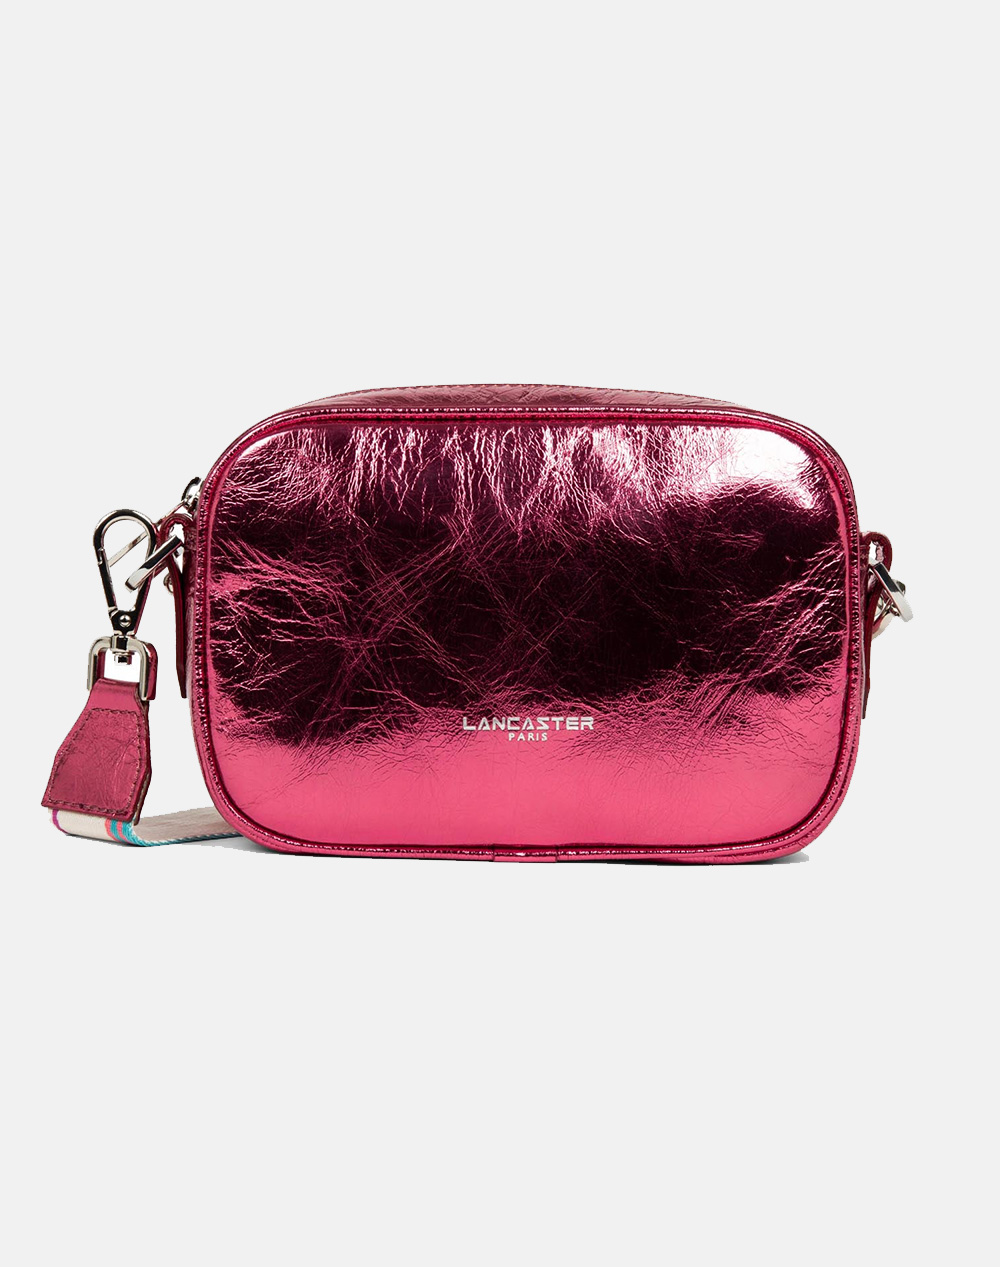 LANCASTER Τσάντα Crossbody bag Fashion Firenze (Διαστάσεις: 21 x 14 x 6 εκ.) 480-041-a.1779 Fuchsia